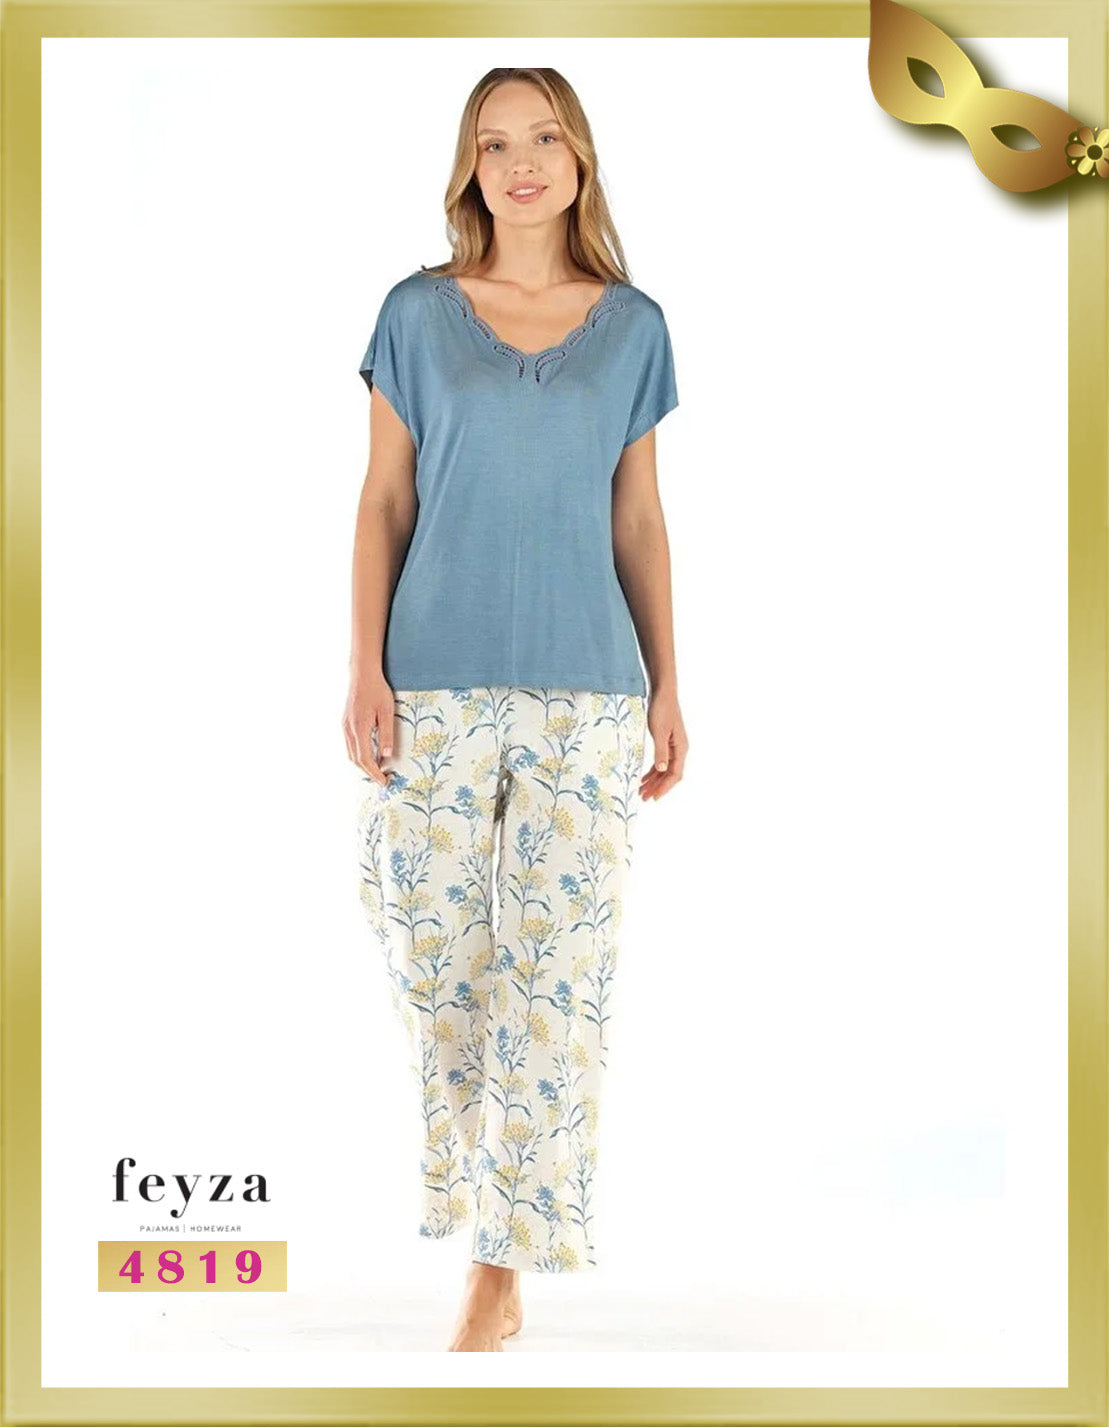 Feyza Short Sleeves Long Printed Pajamas 4819